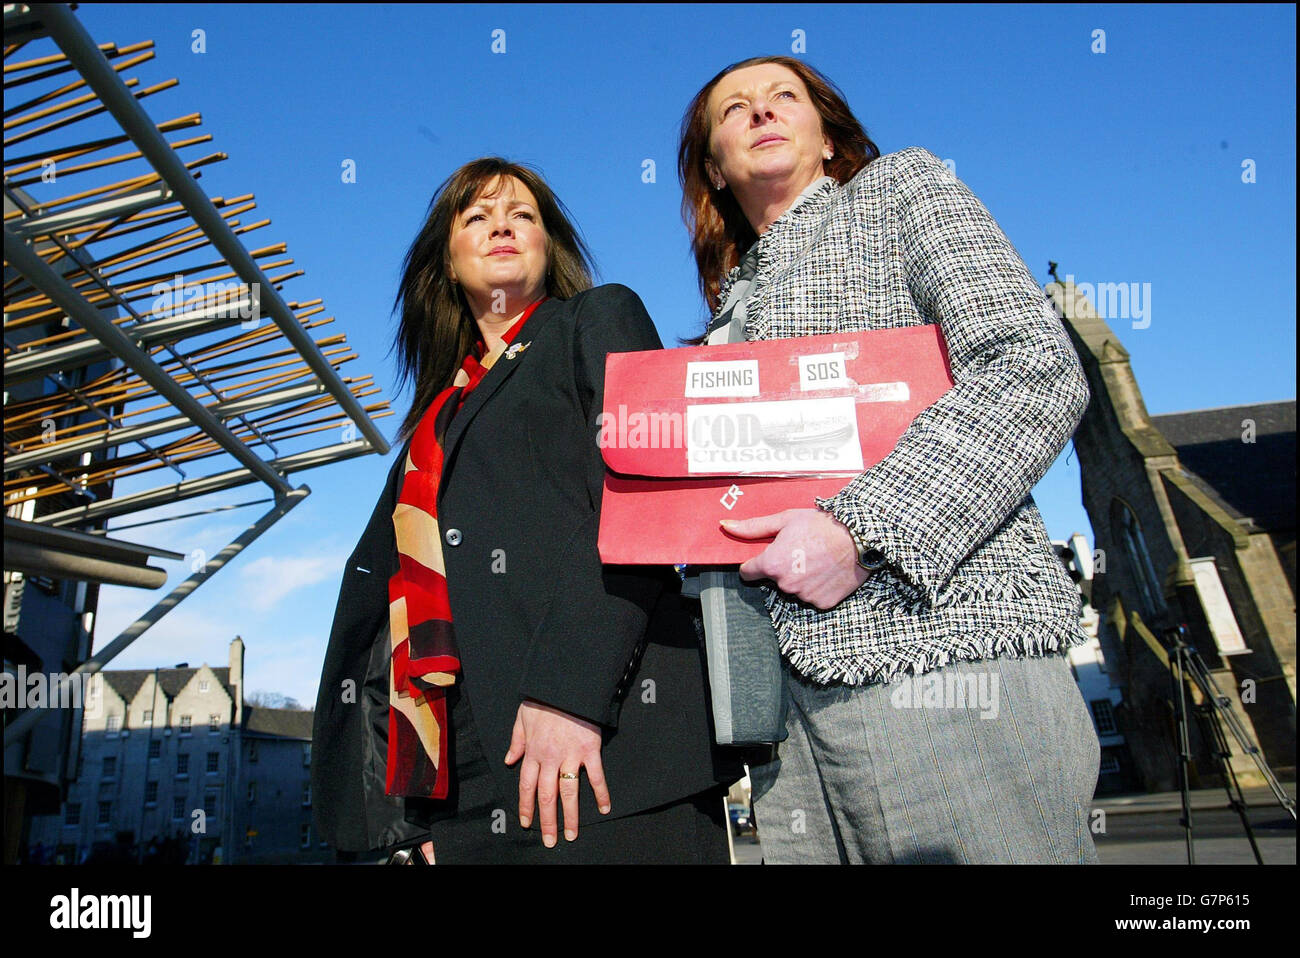 Carol MacDonald (sinistra) e Morag Ritchie sono in viaggio verso la commissione per le petizioni per quanto riguarda le quote di cattura del merluzzo bianco. Foto Stock